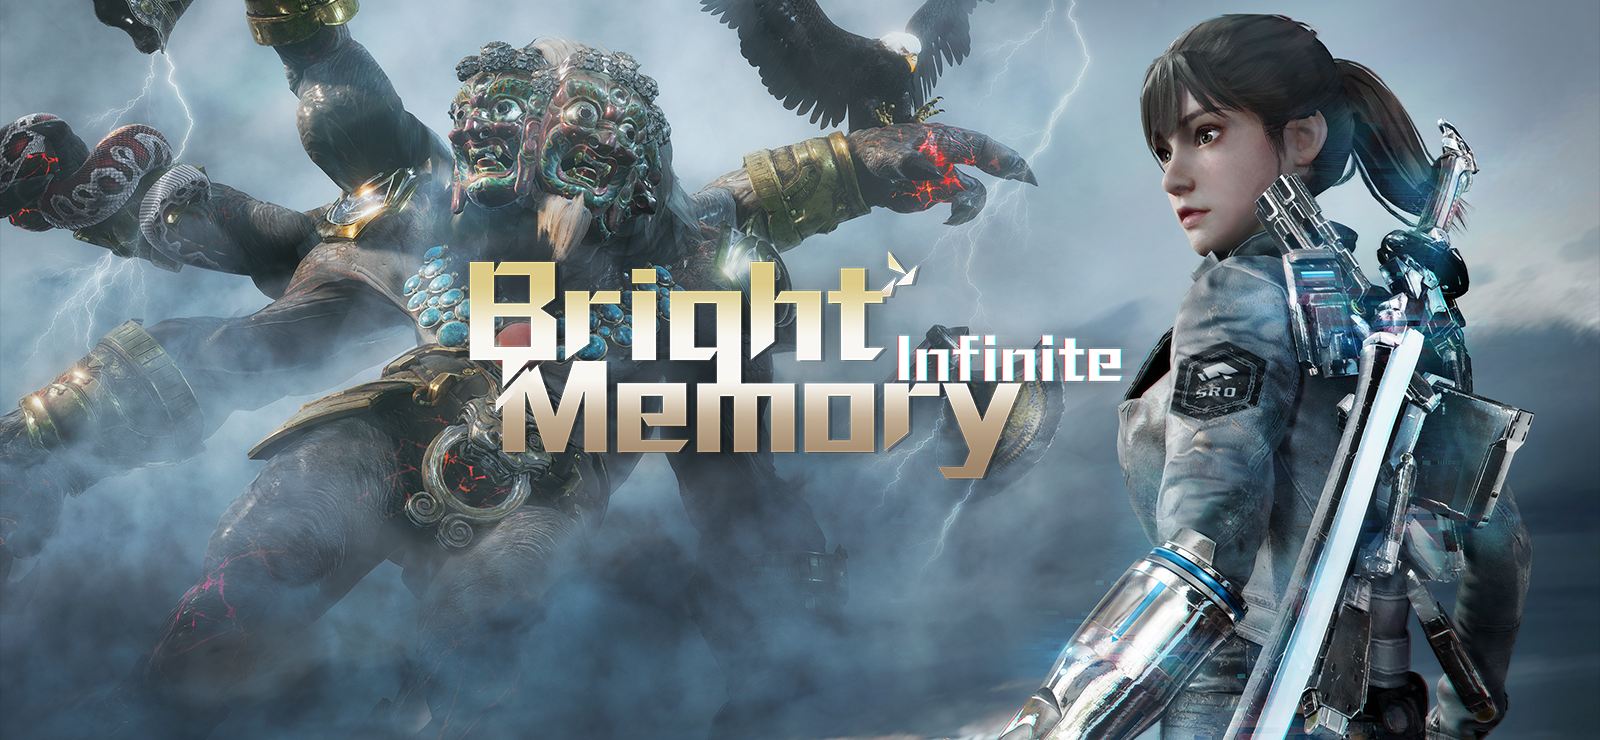 Bright Memory: Infinite Cheongsam (New Year) DLC